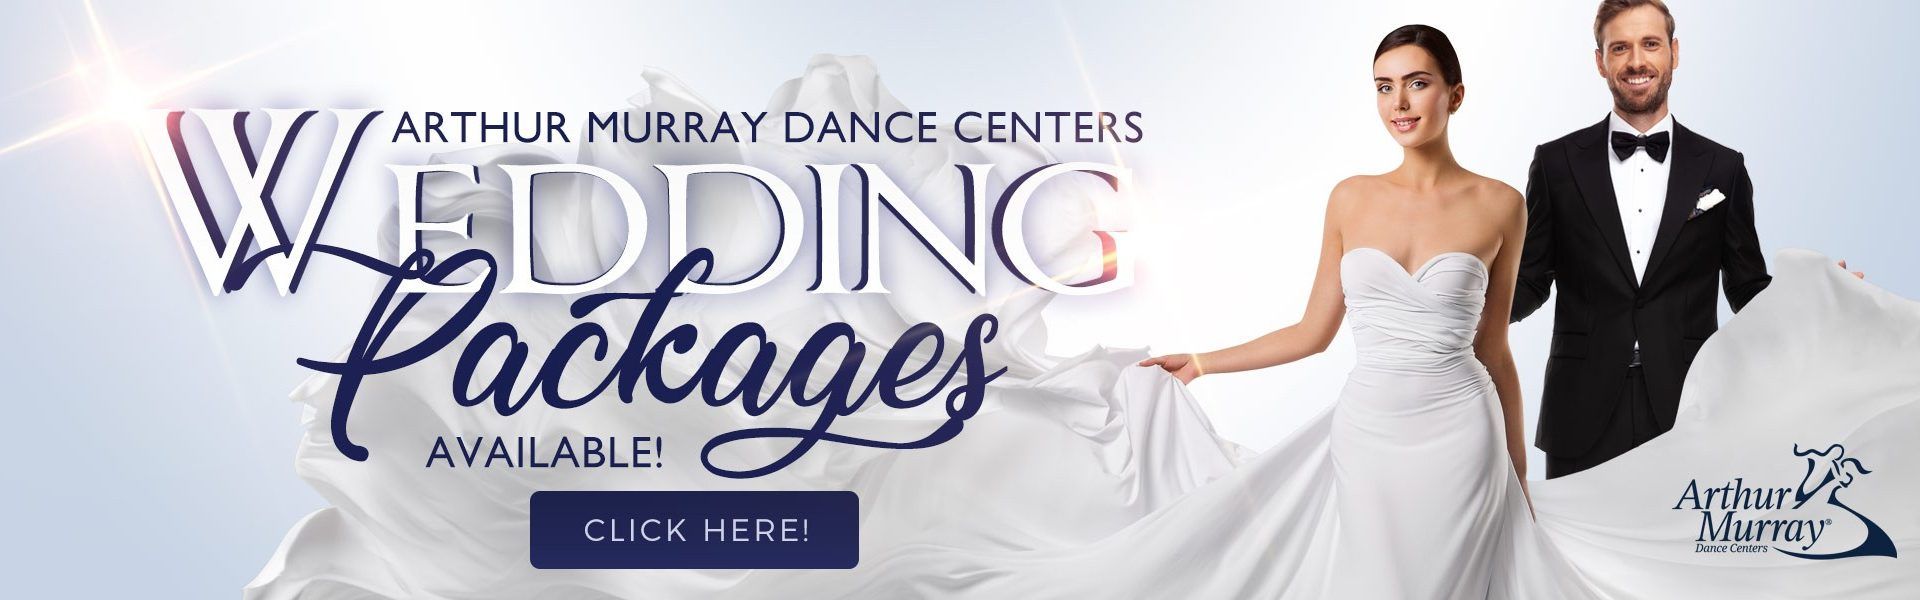 Arthur Murray Wedding Dance Packages Banner